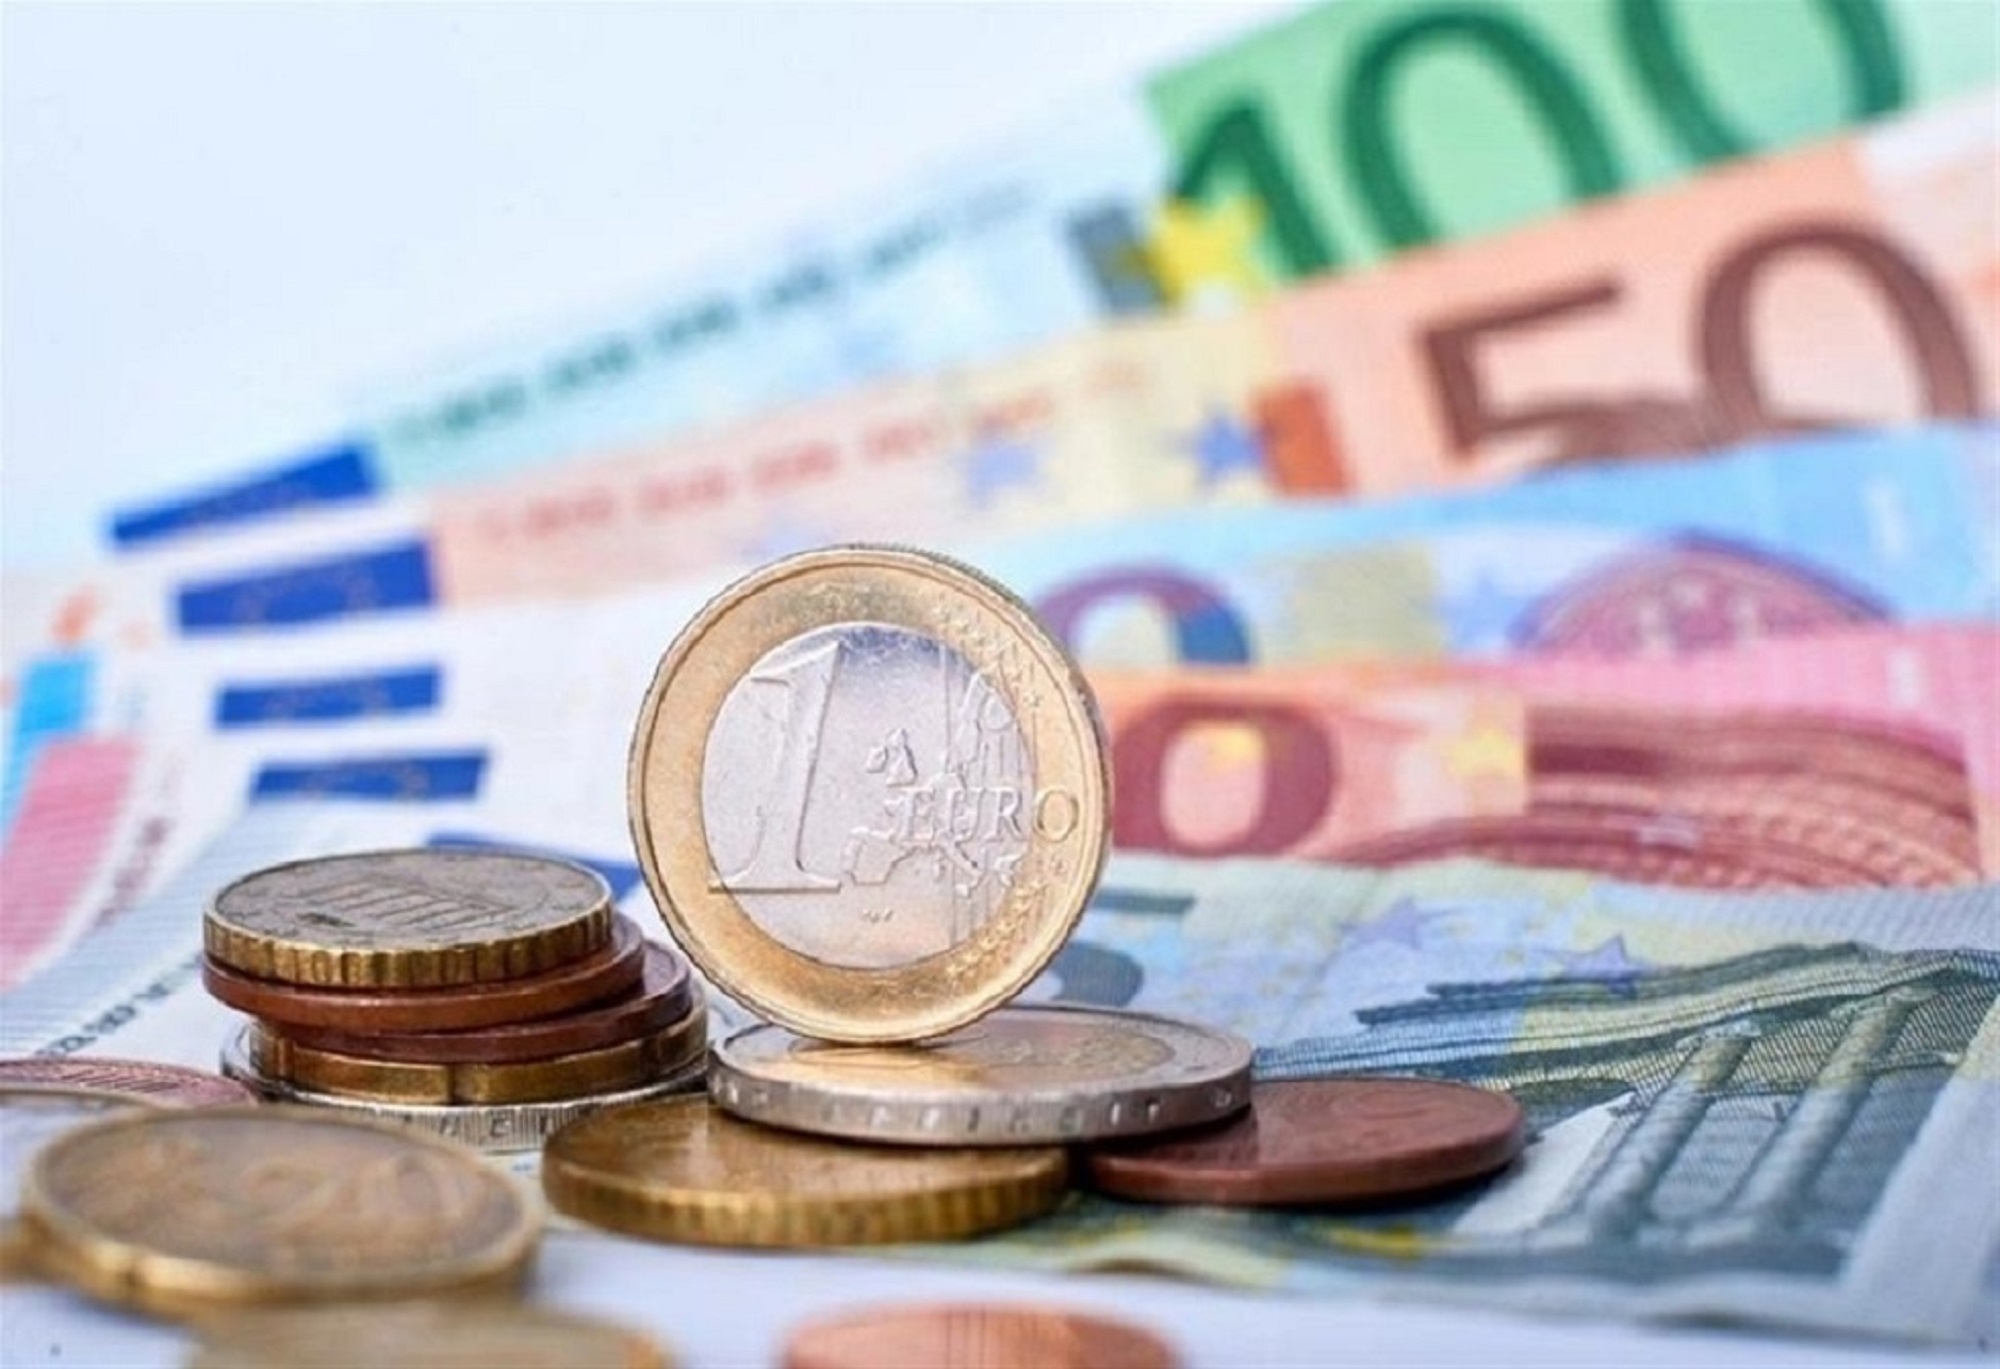 Επίδομα 250 ευρώ σε χαμηλοσυνταξιούχους, ανασφάλιστους υπερήλικες και ΑΜΕΑ: Οι όροι και οι προϋποθέσεις